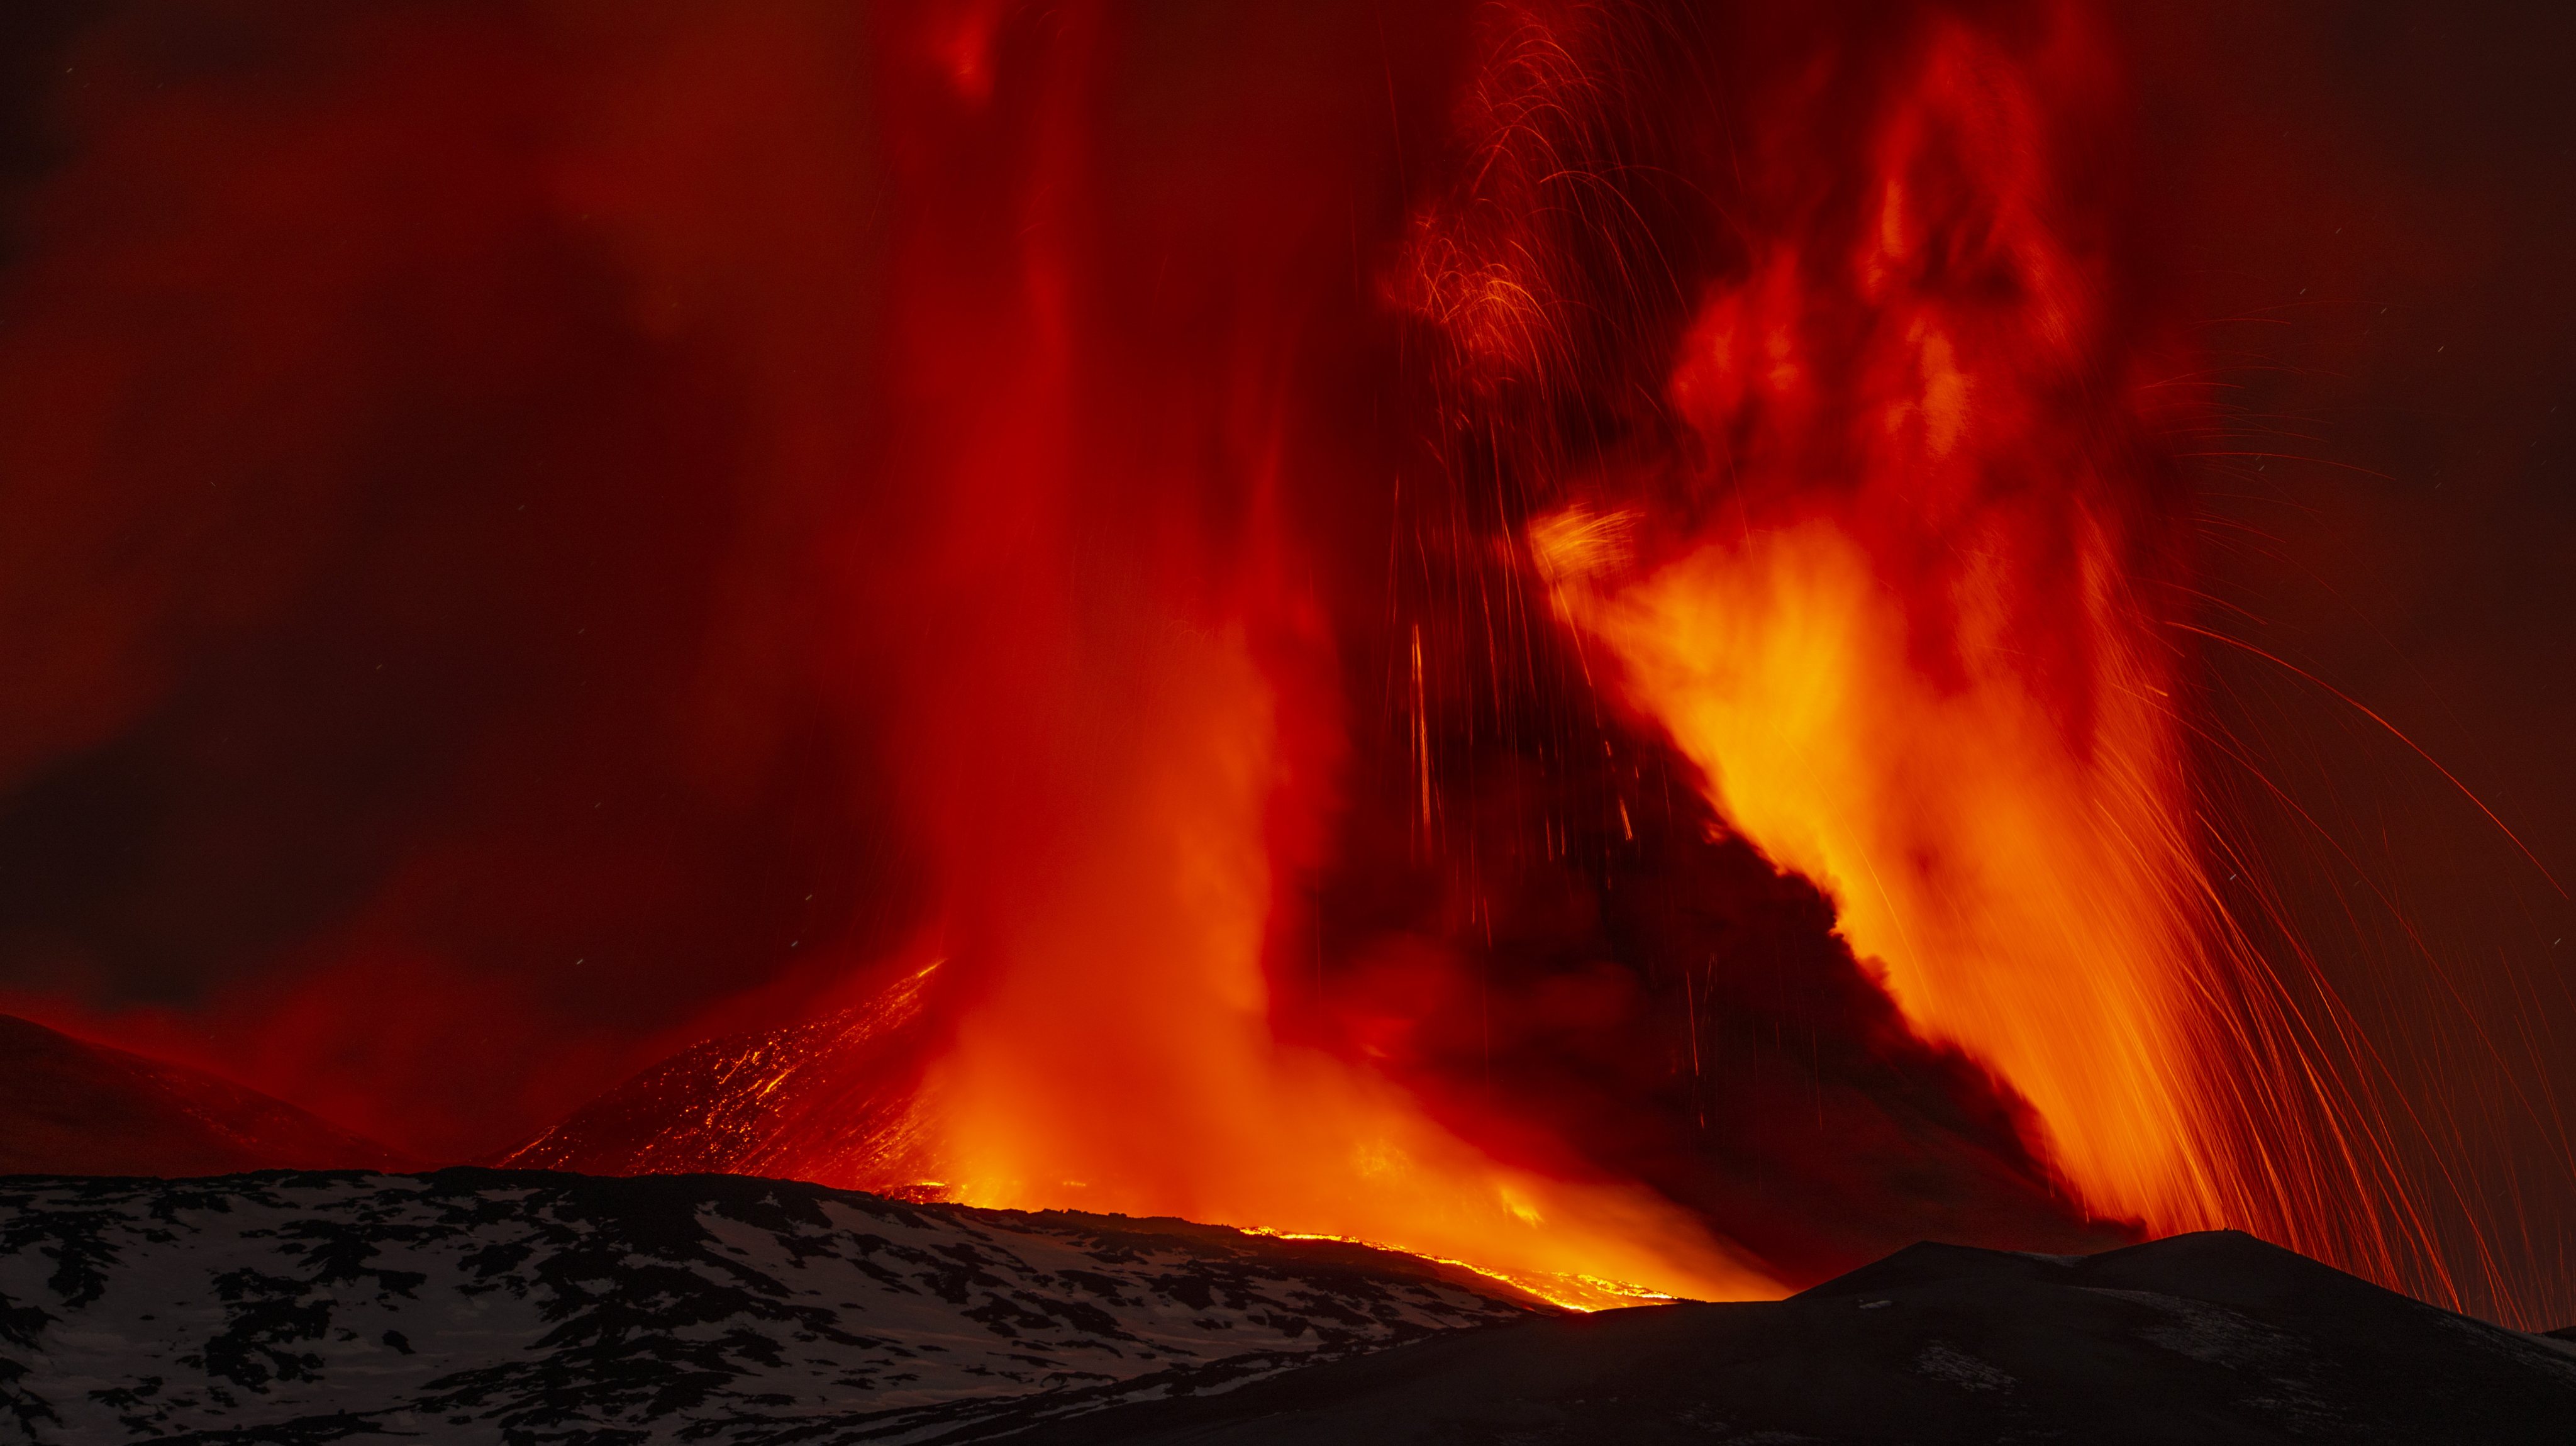 Vulcão Etna, em Itália, que entrou novamente em erupção na noite desta quinta-feira, lançando uma nuvem de fumo, cinzas e lava que atingiu os oito quilómetros